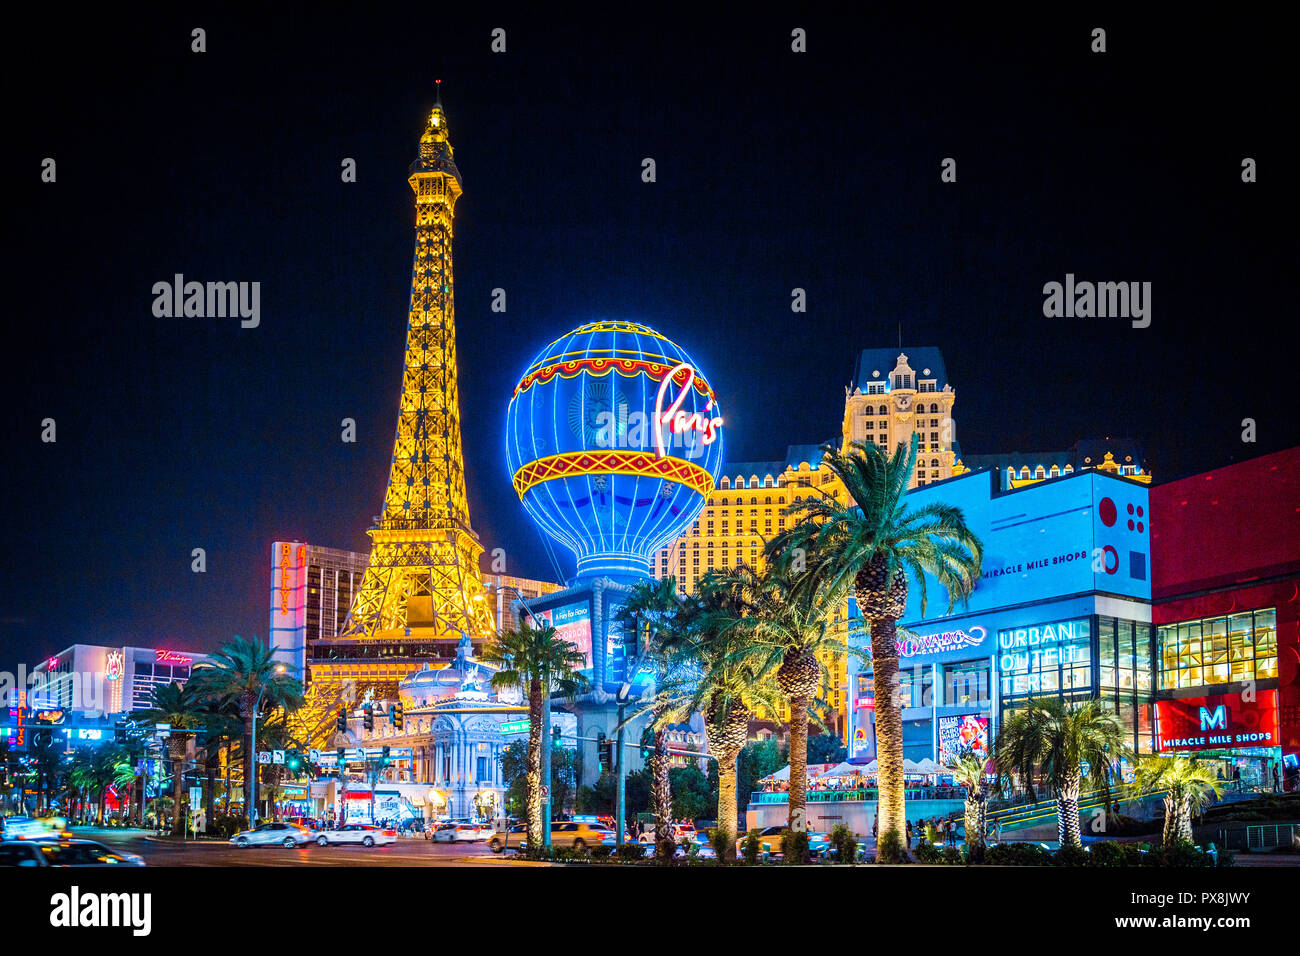 Septiembre 20, 2017 - LAS VEGAS: vista clásica de coloridos con el famoso centro de Las Vegas Strip y Paris Las Vegas Hotel and Casino complejo por la noche Foto de stock